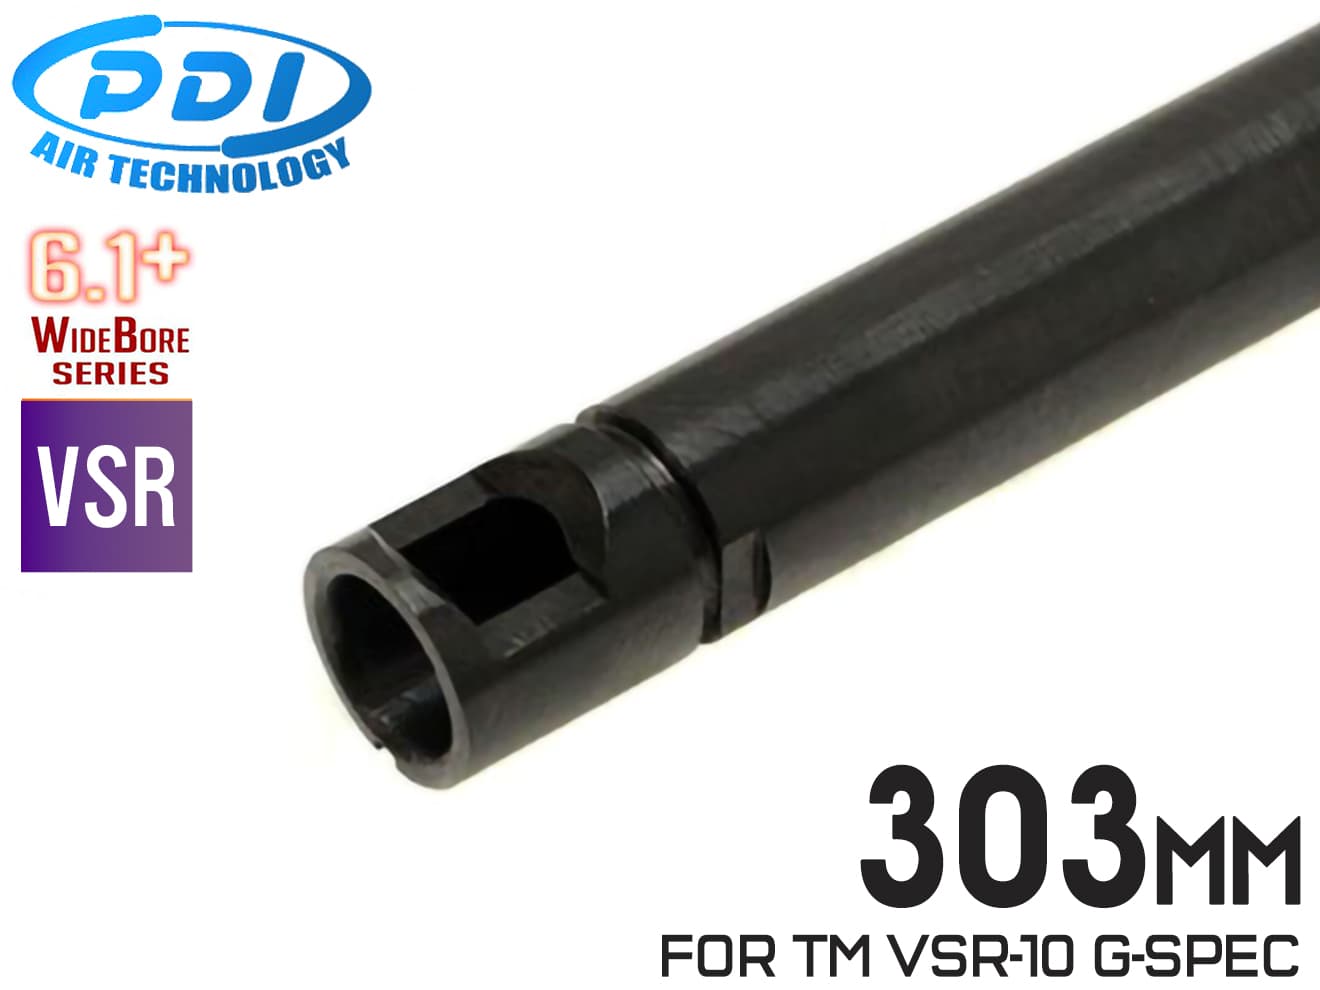 PD-AC-022　PDI WIDEBOREシリーズ 6.1  VSR L96 ルーズ インナーバレル(6.1±0.007mm) 303mm